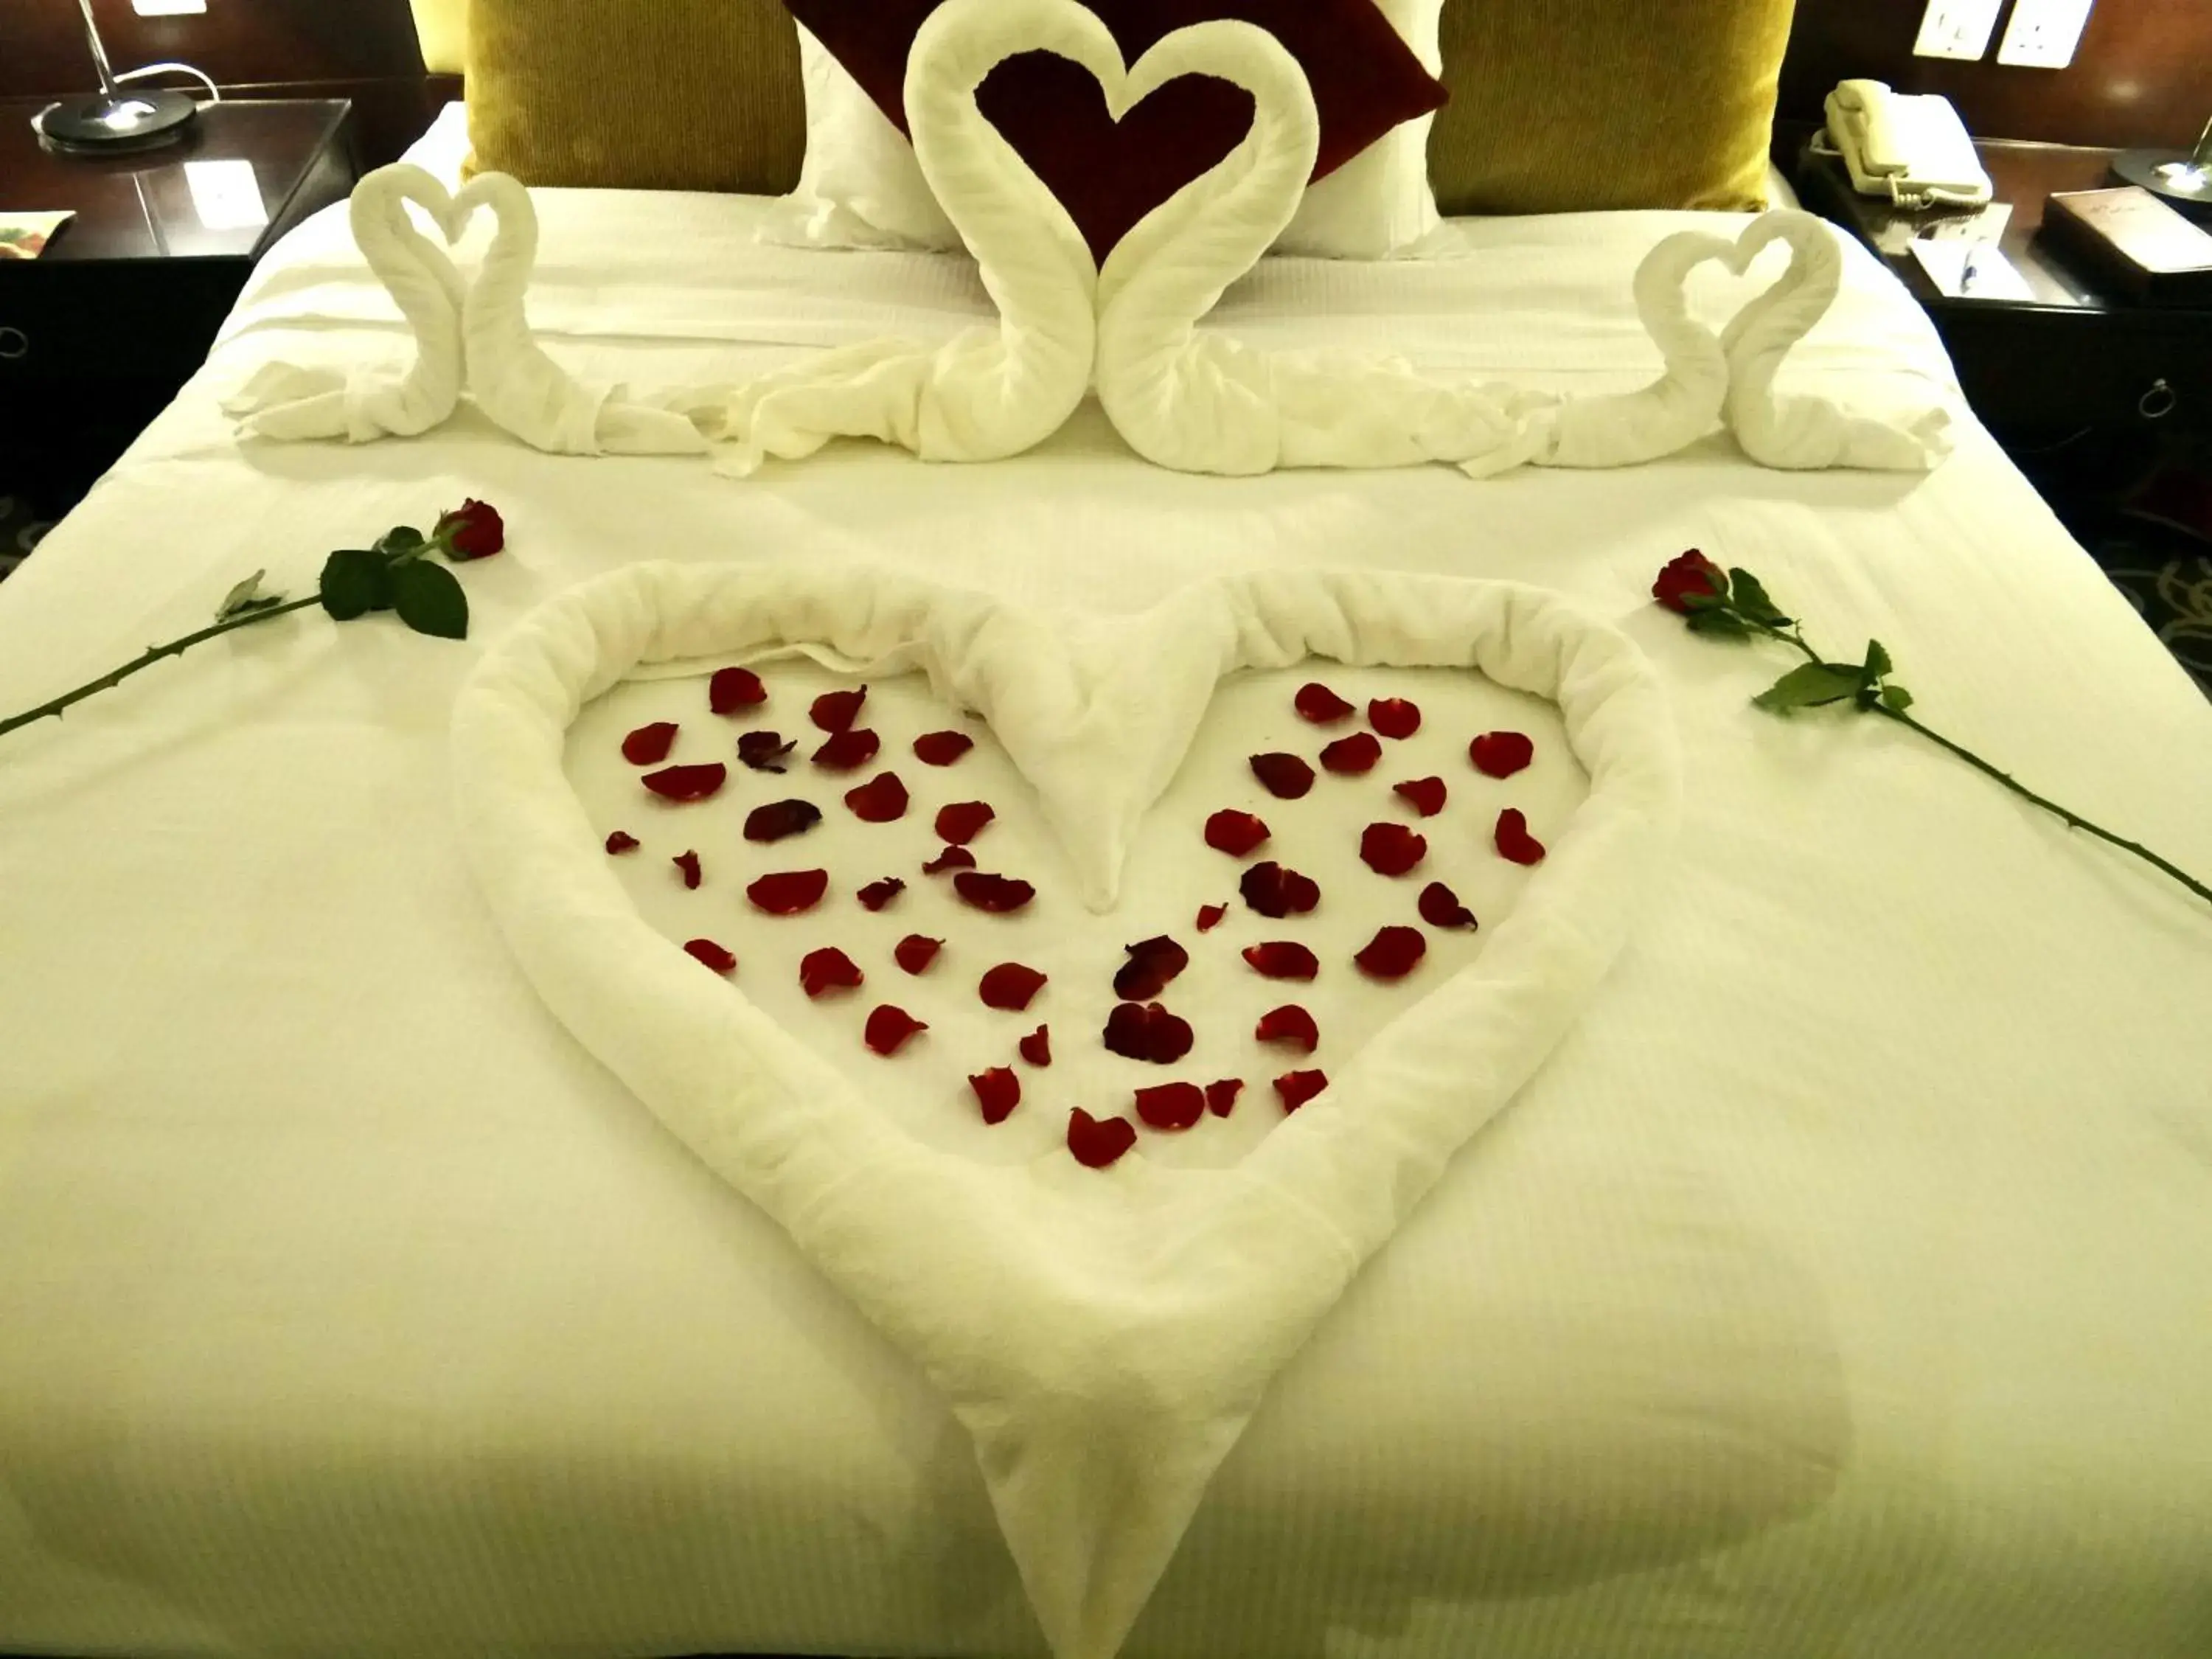 Bathroom, Bed in Concorde Fujairah Hotel